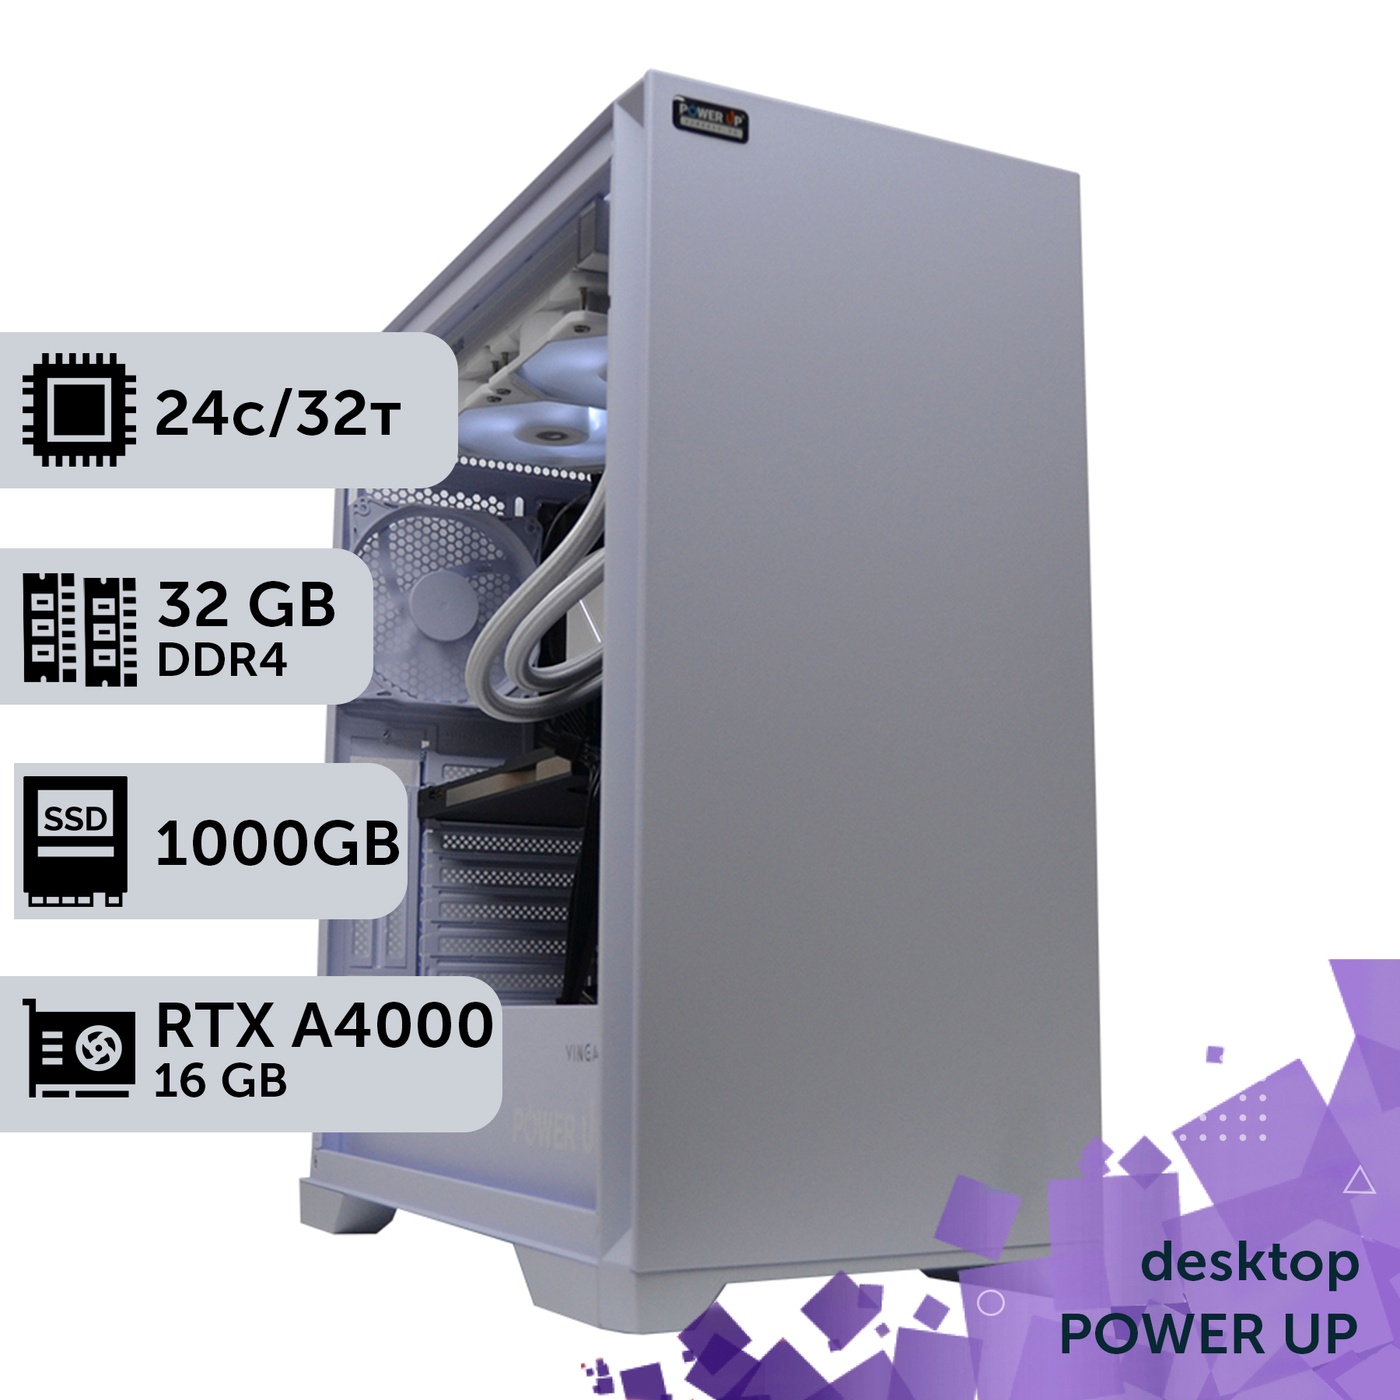 Рабочая станция PowerUp Desktop #240 Core i9 13900K/32 GB/SSD 1TB/NVIDIA Quadro RTX A4000 16GB